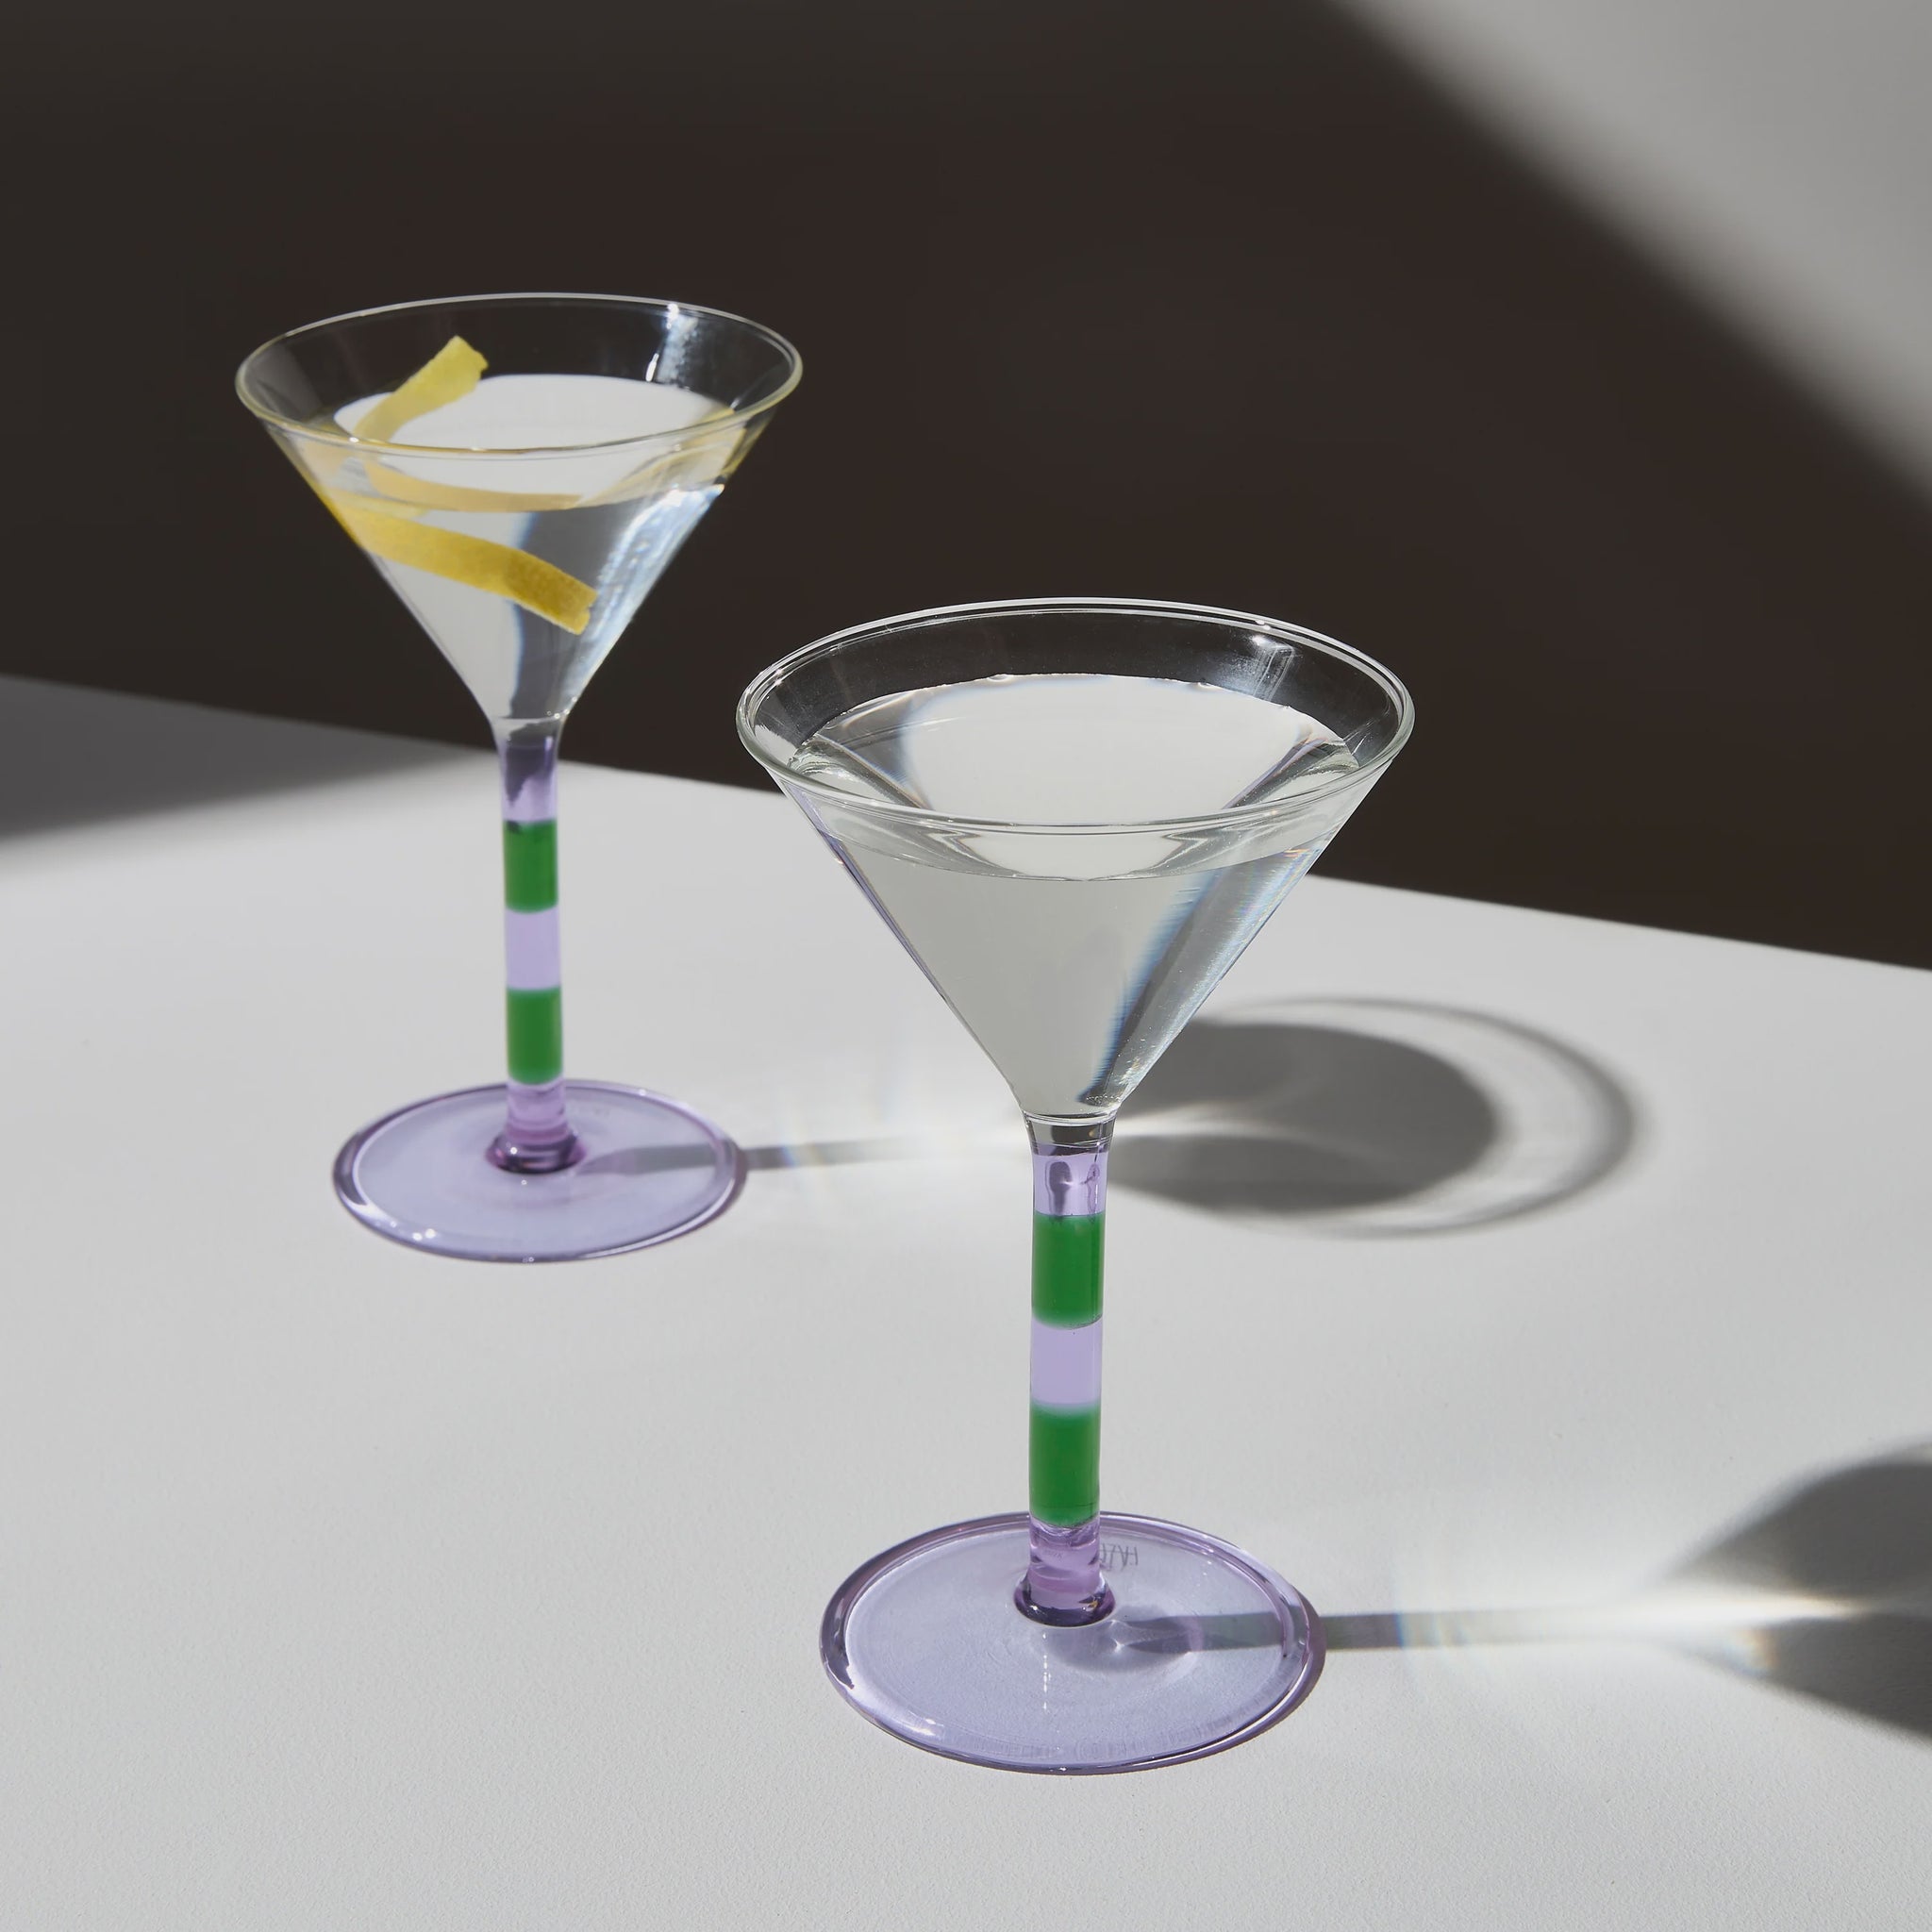 Two X Striped Martini Glasses